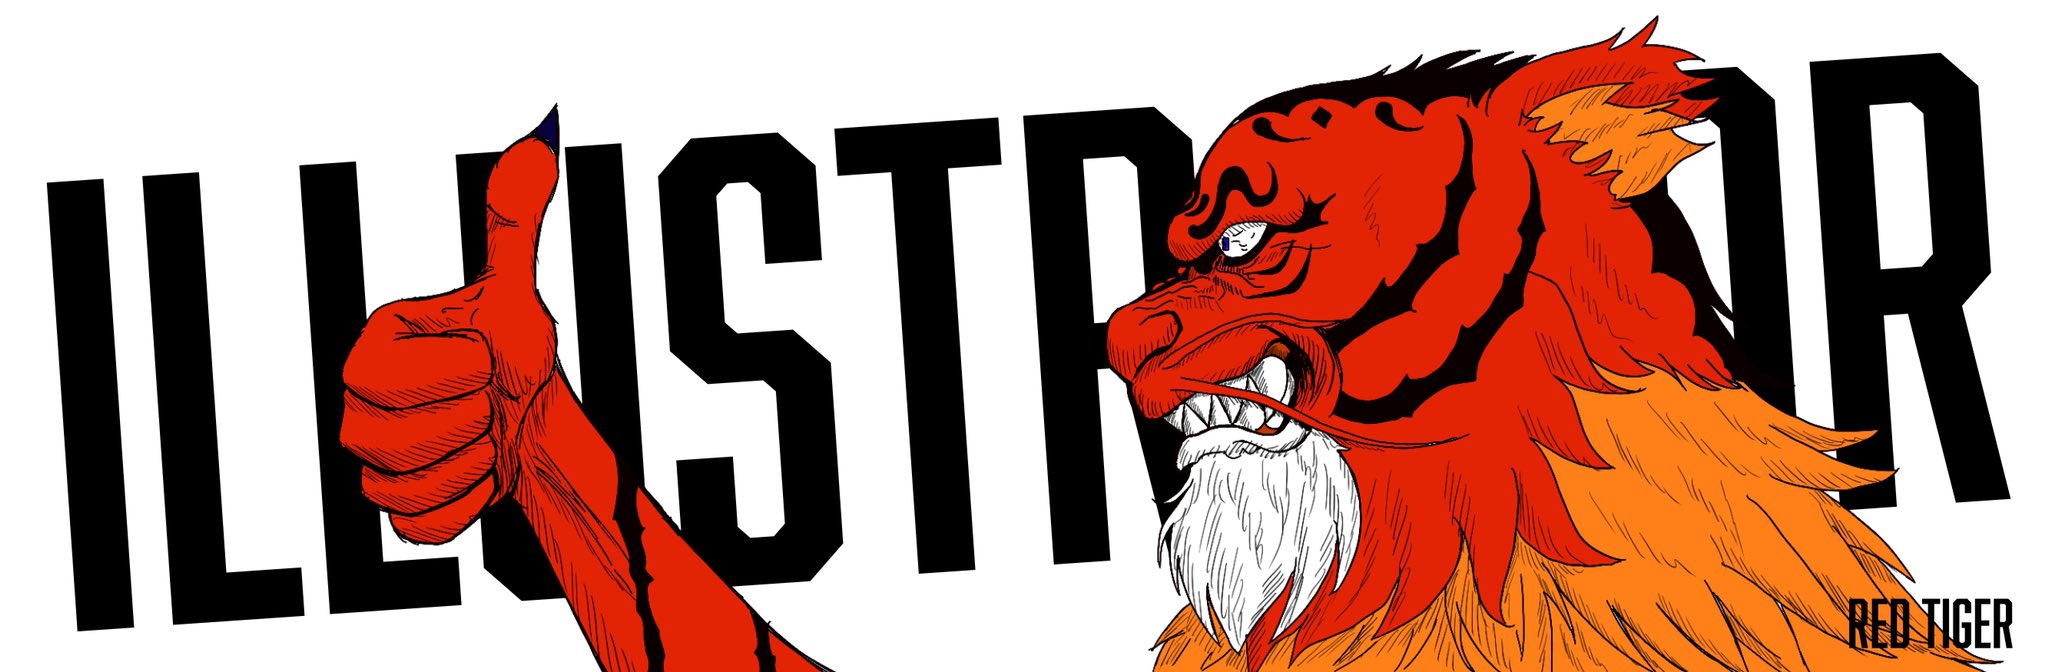 Red Tiger カバー画像を作りました イラスト イラストレーター デザイナー グラフィックデザイナー デジタルイラスト 虎 漫画 アニメ 挿絵 絵 かっこいい 動物 アニマル ウェブデザイン バナー T Co Fdzgkop8xq Twitter